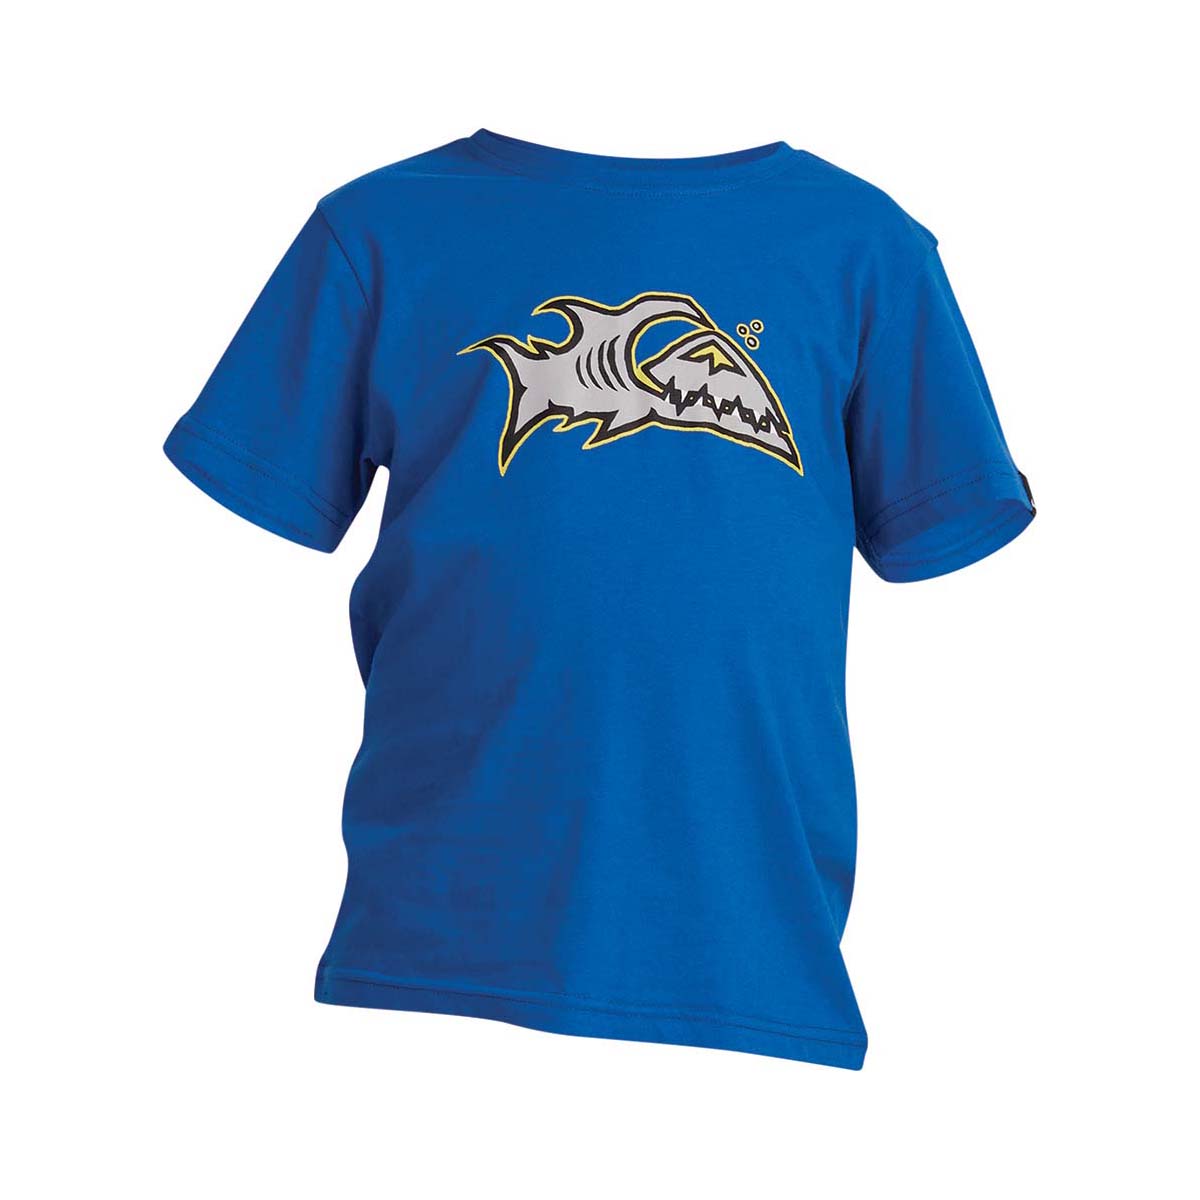 Quiksilver Kids' Heritage Shark Short Sleeve Tee 6